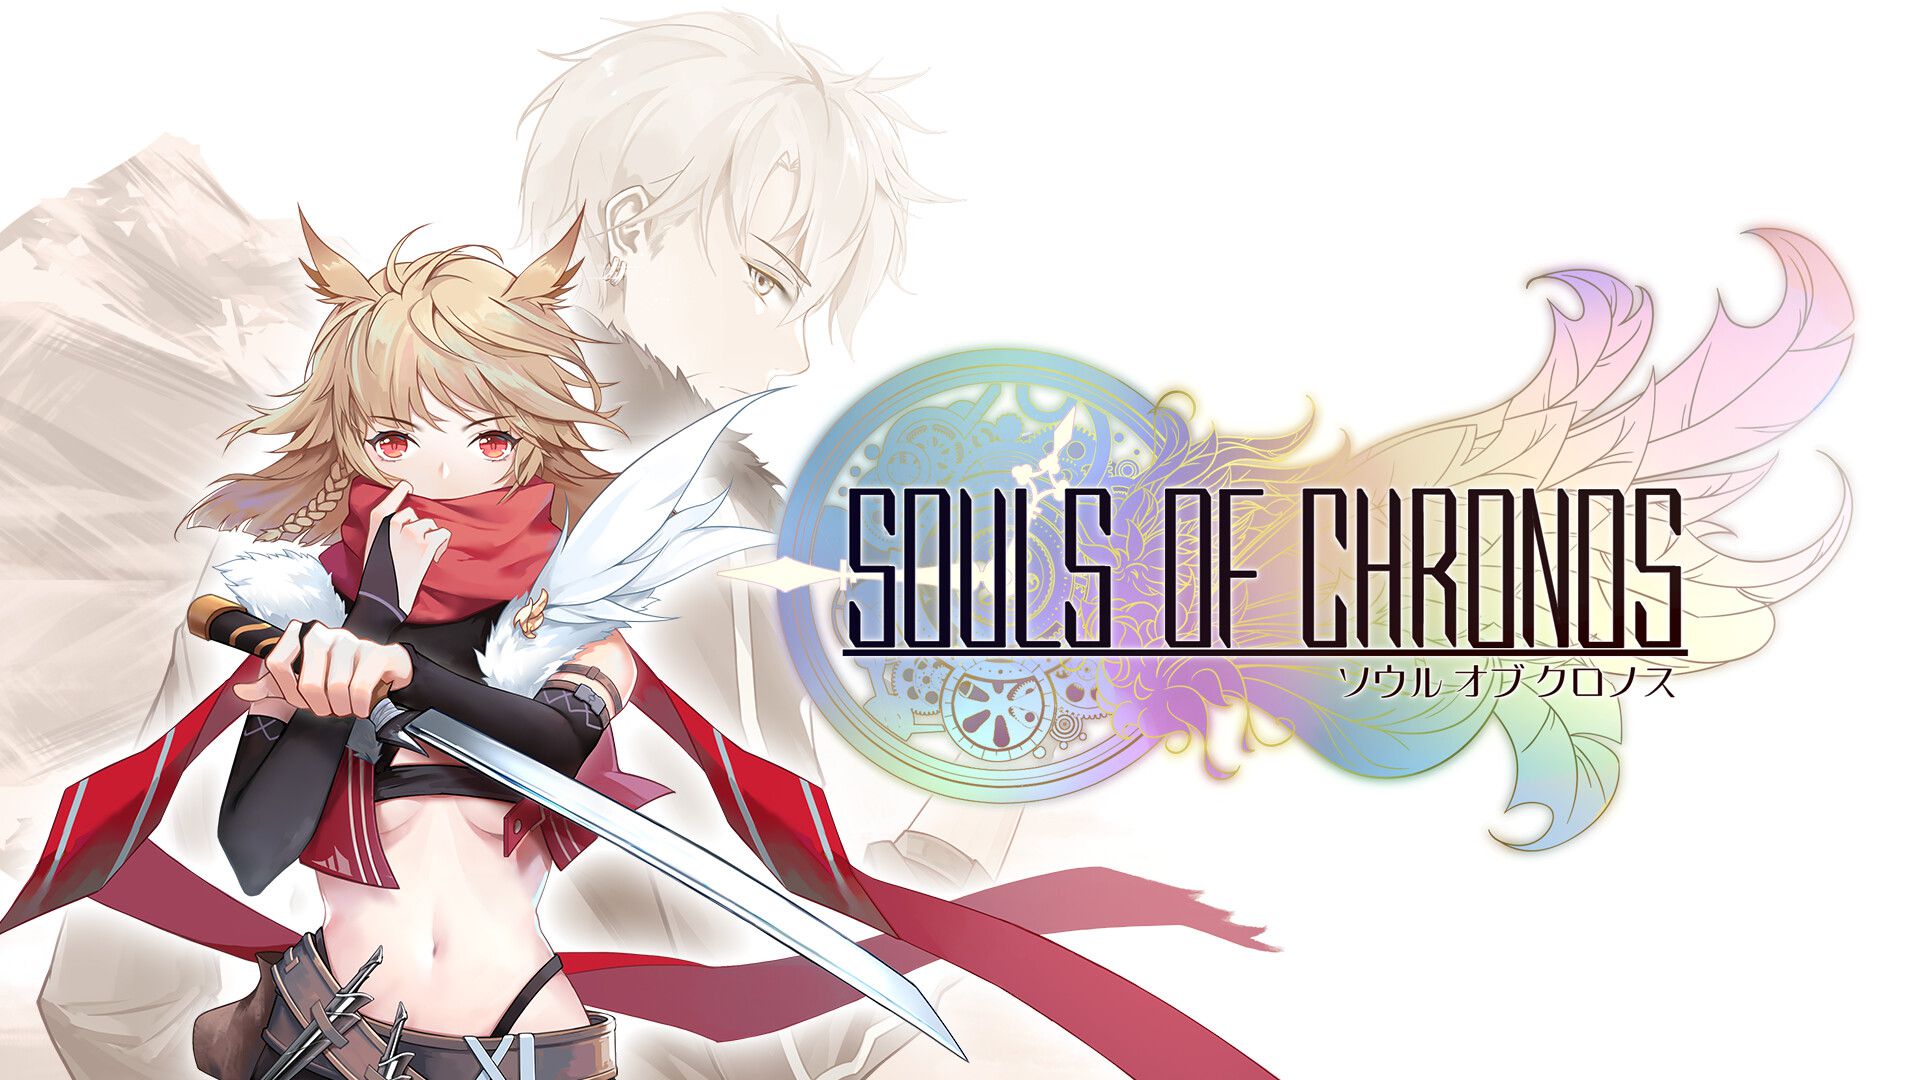 JRPG-inspired game Souls of Chronos announced